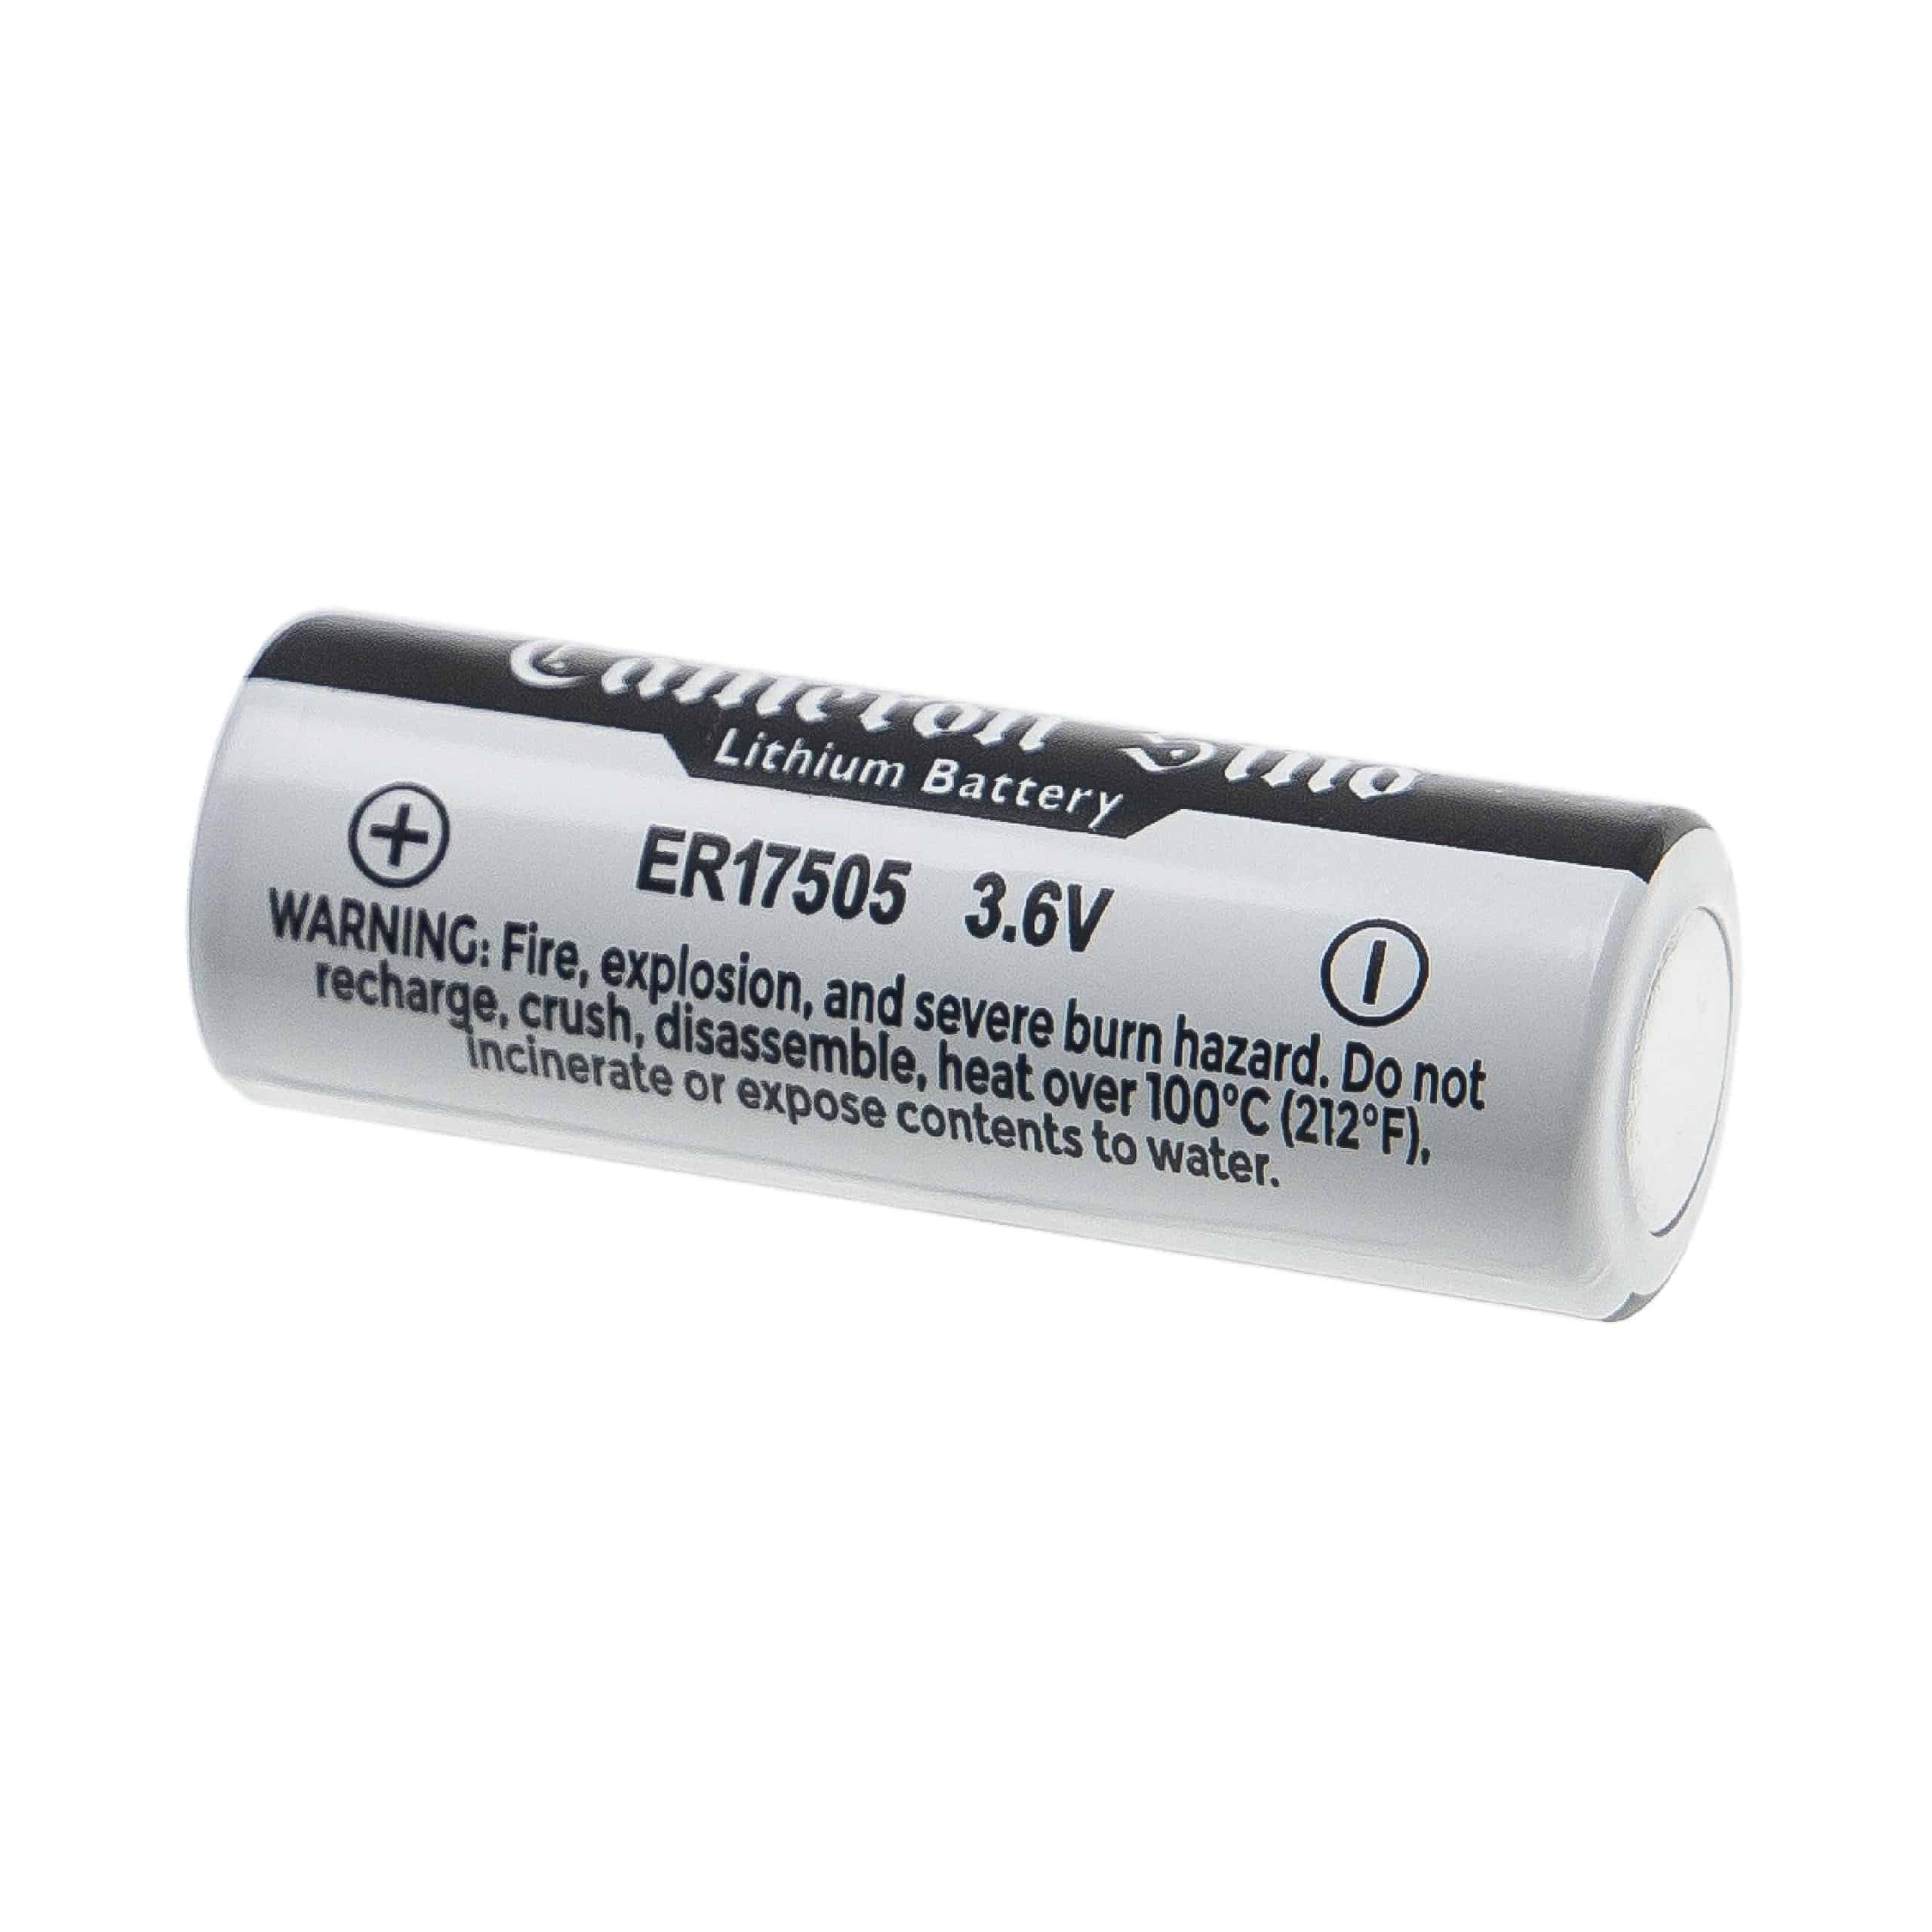 Batteria speciale ER17505 / SB-A01 (Size A) / LS17500 / ER17/50 per diverse applicazioni - 3600mAh 3,6V Li-MnO